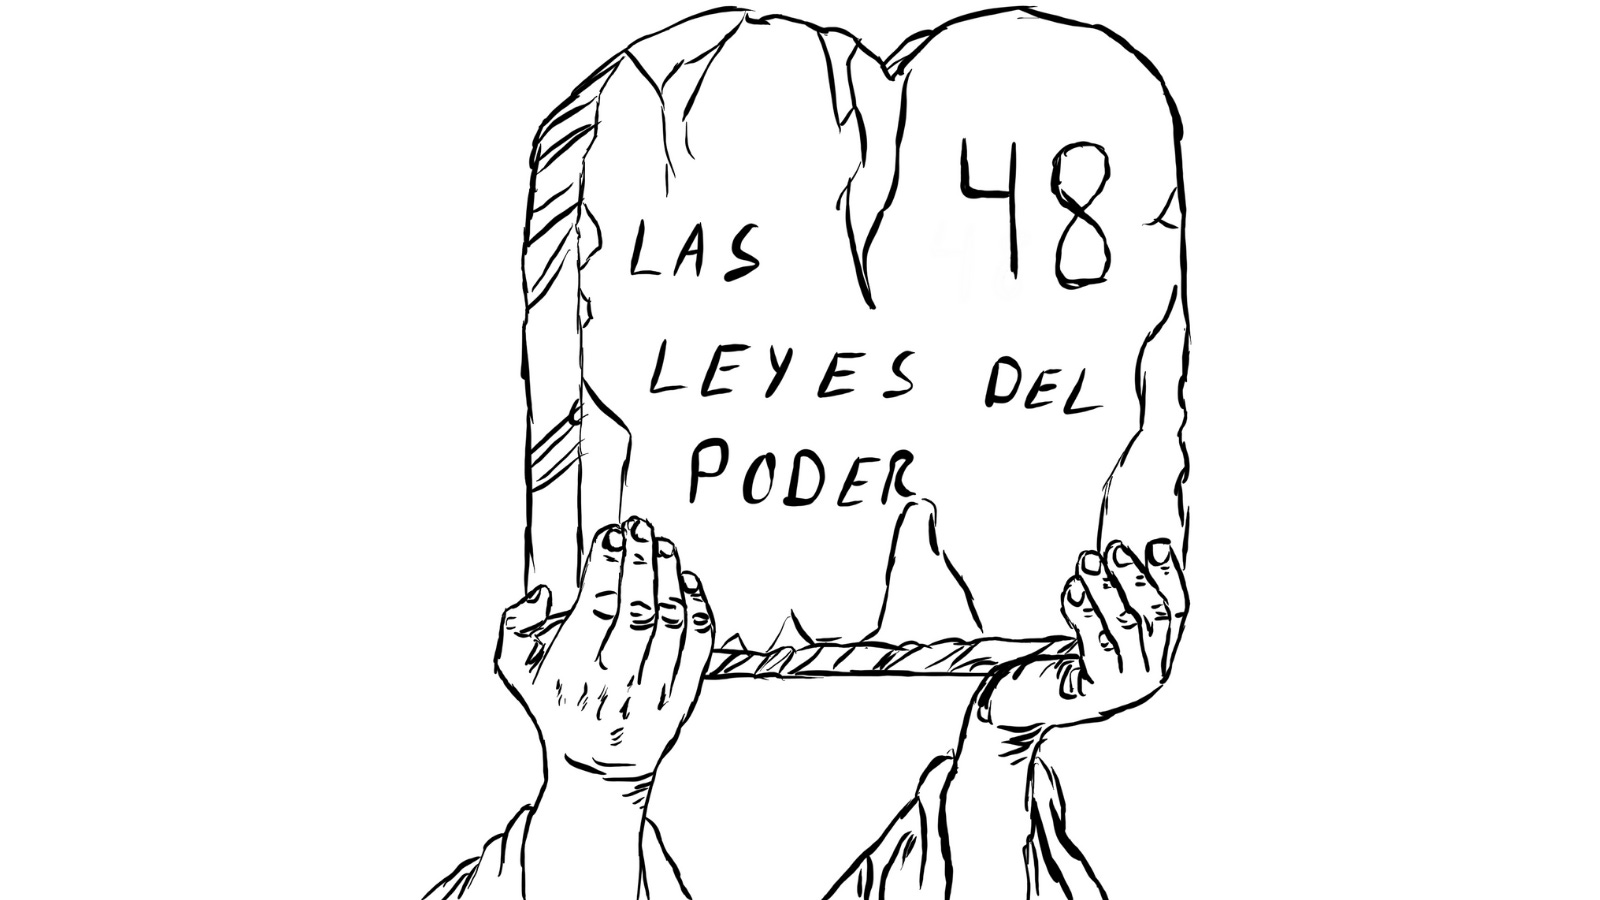 Las 48 del Poder. - by Diego Puertas